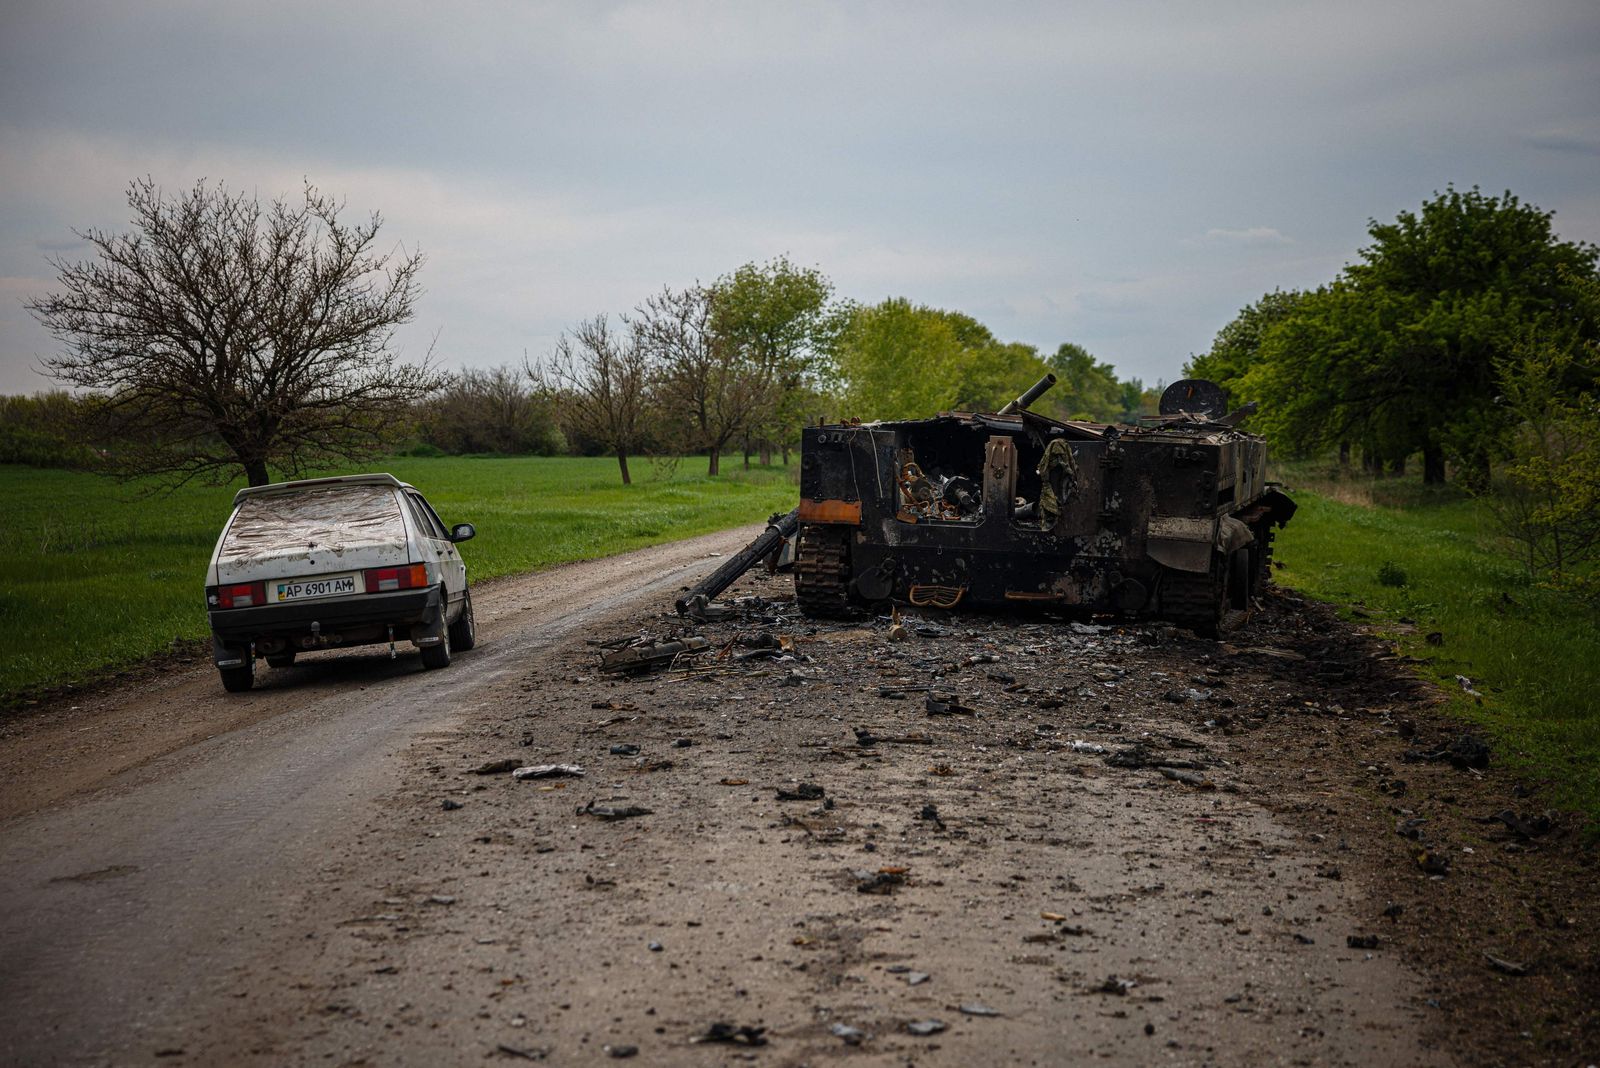 سيارة تمر بجانب مركبة قتال روسية مدمرة على طريق قرب بوكروفسك، شرق أوكرانيا. 4 مايو 2022 - AFP